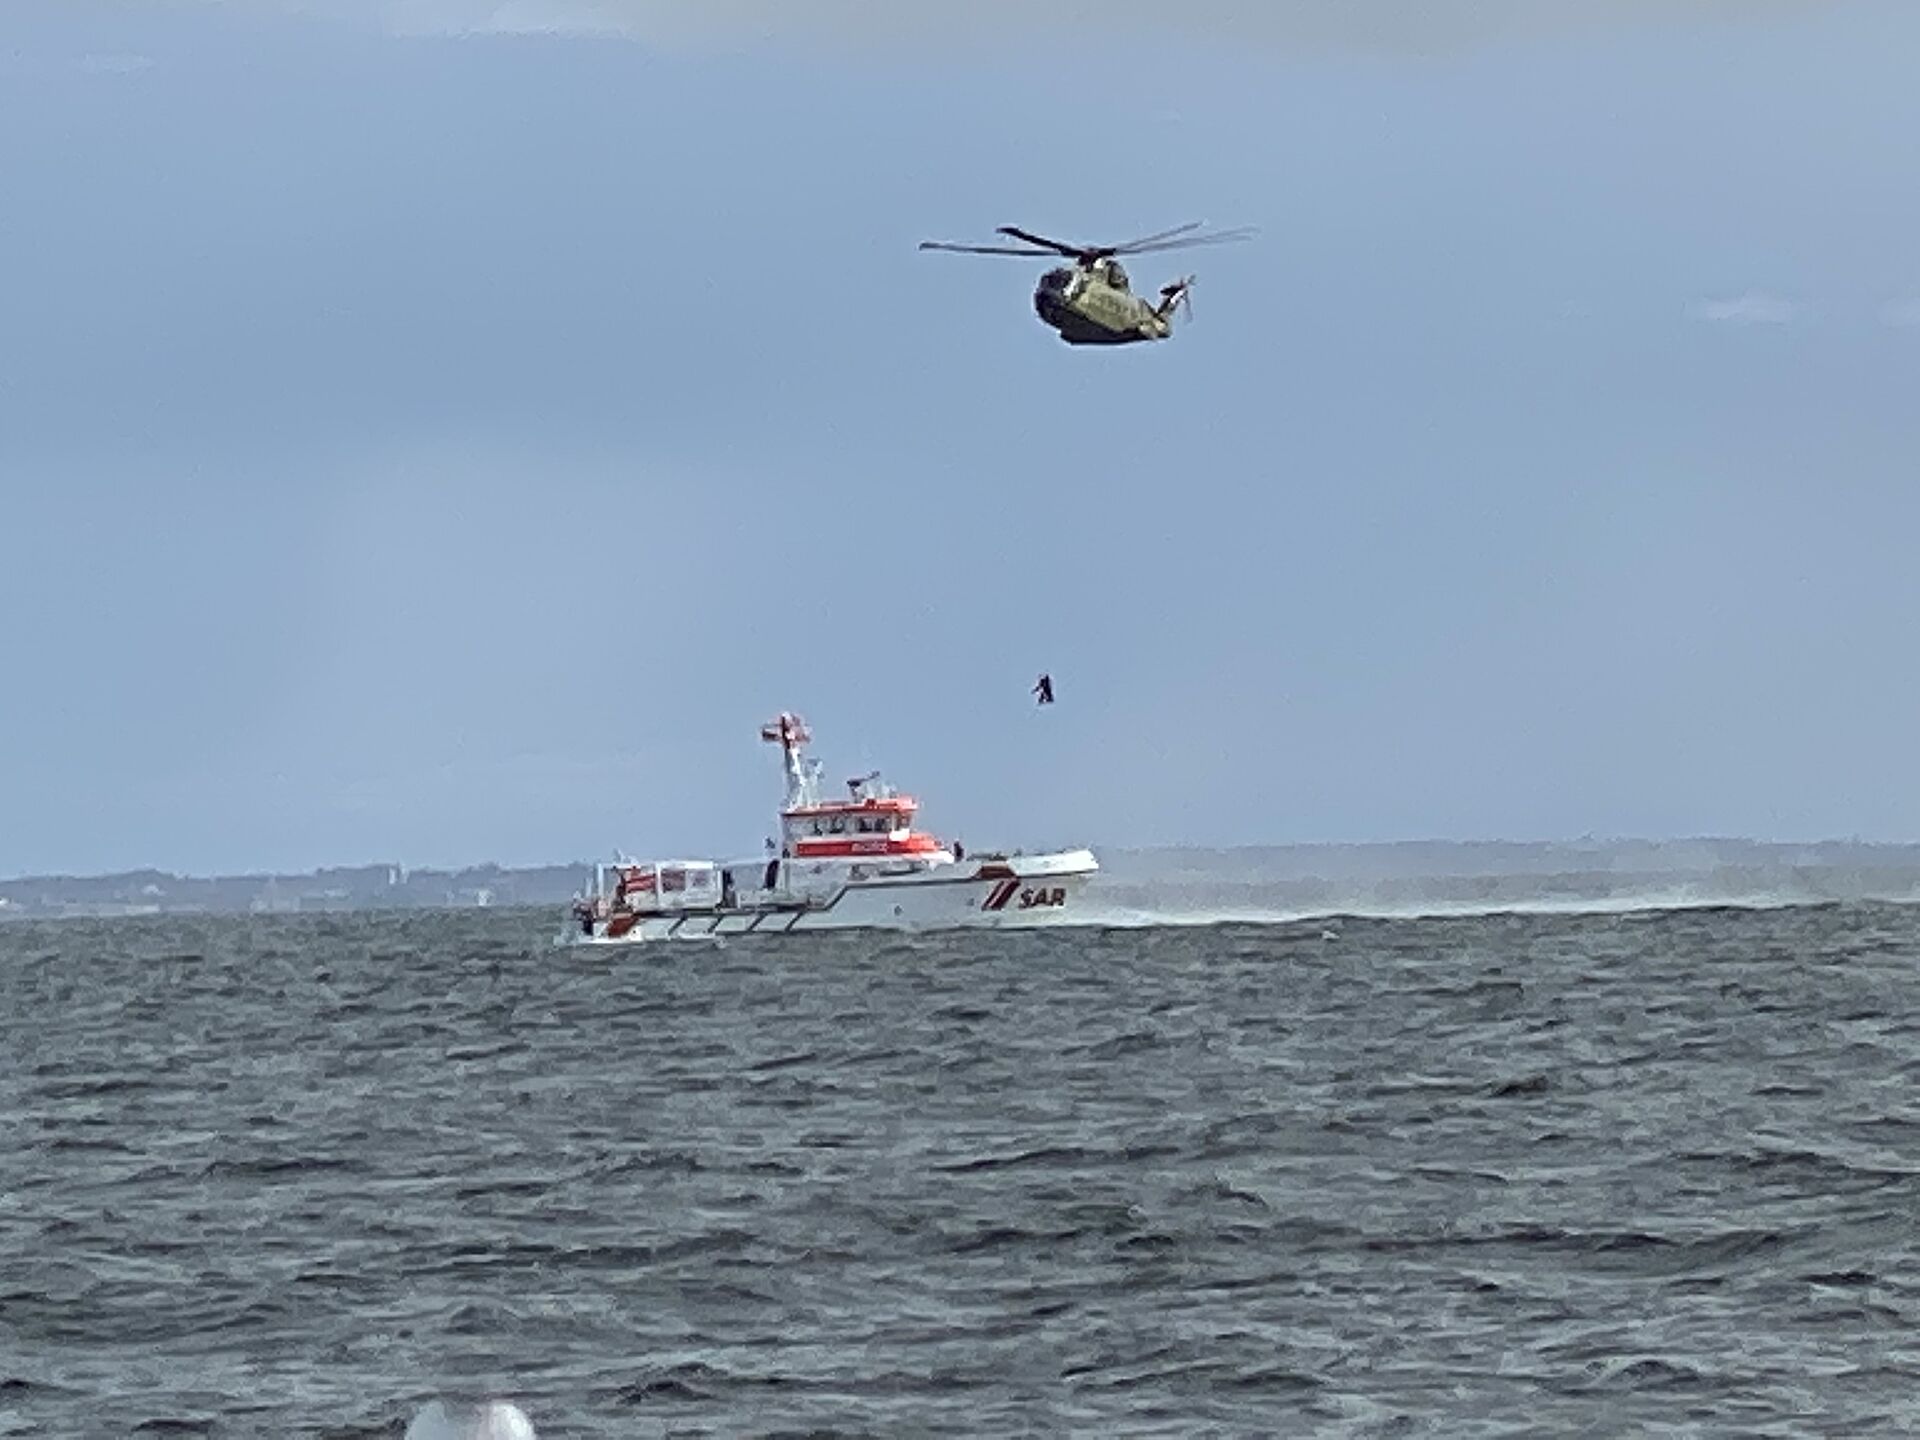 Angler von dänischem Hubschrauber aus Rettungsinsel gerettet